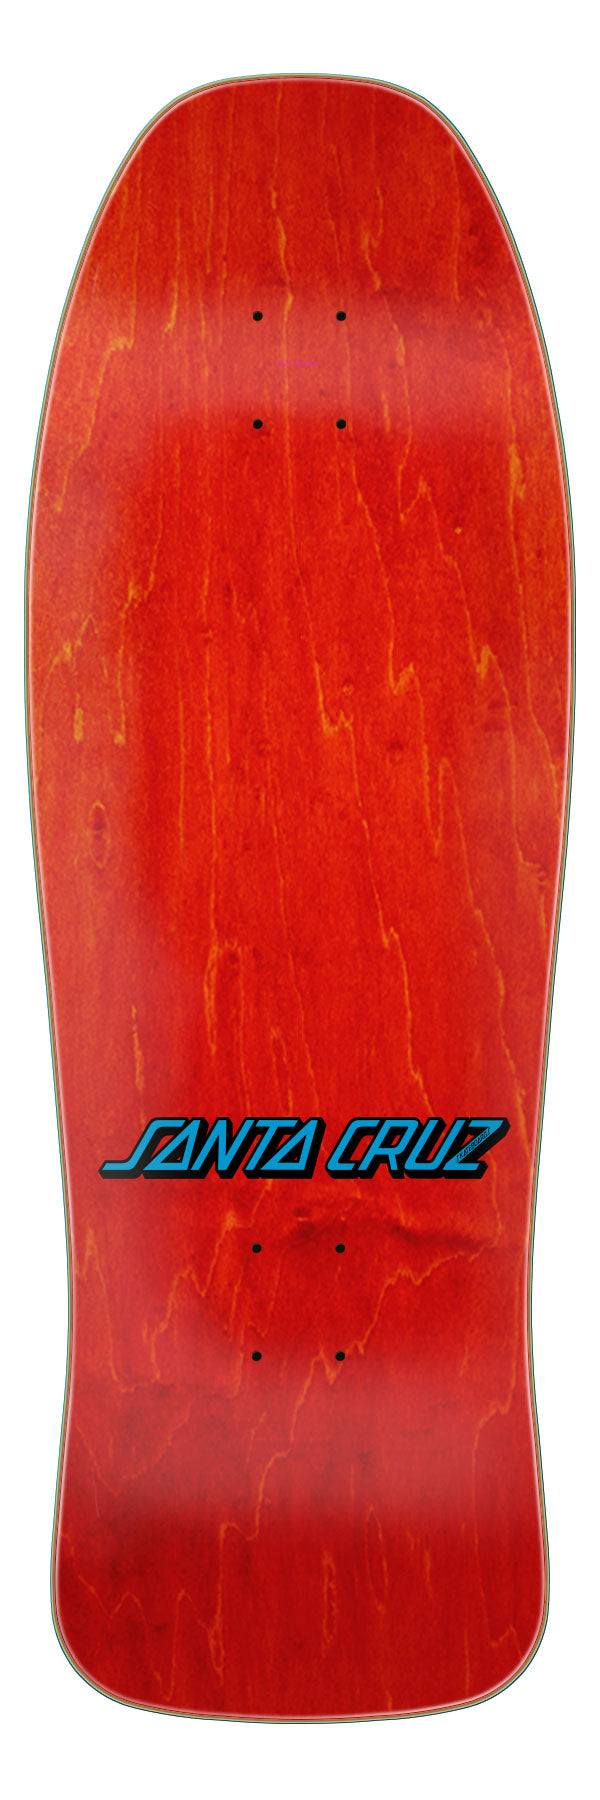 Santa Cruz - Tabla Kendall Snake ReIssue 9.975 x 30.125 - Lo Mejor De Santa Cruz - Solo Por $74990! Compra Ahora En Wallride Skateshop